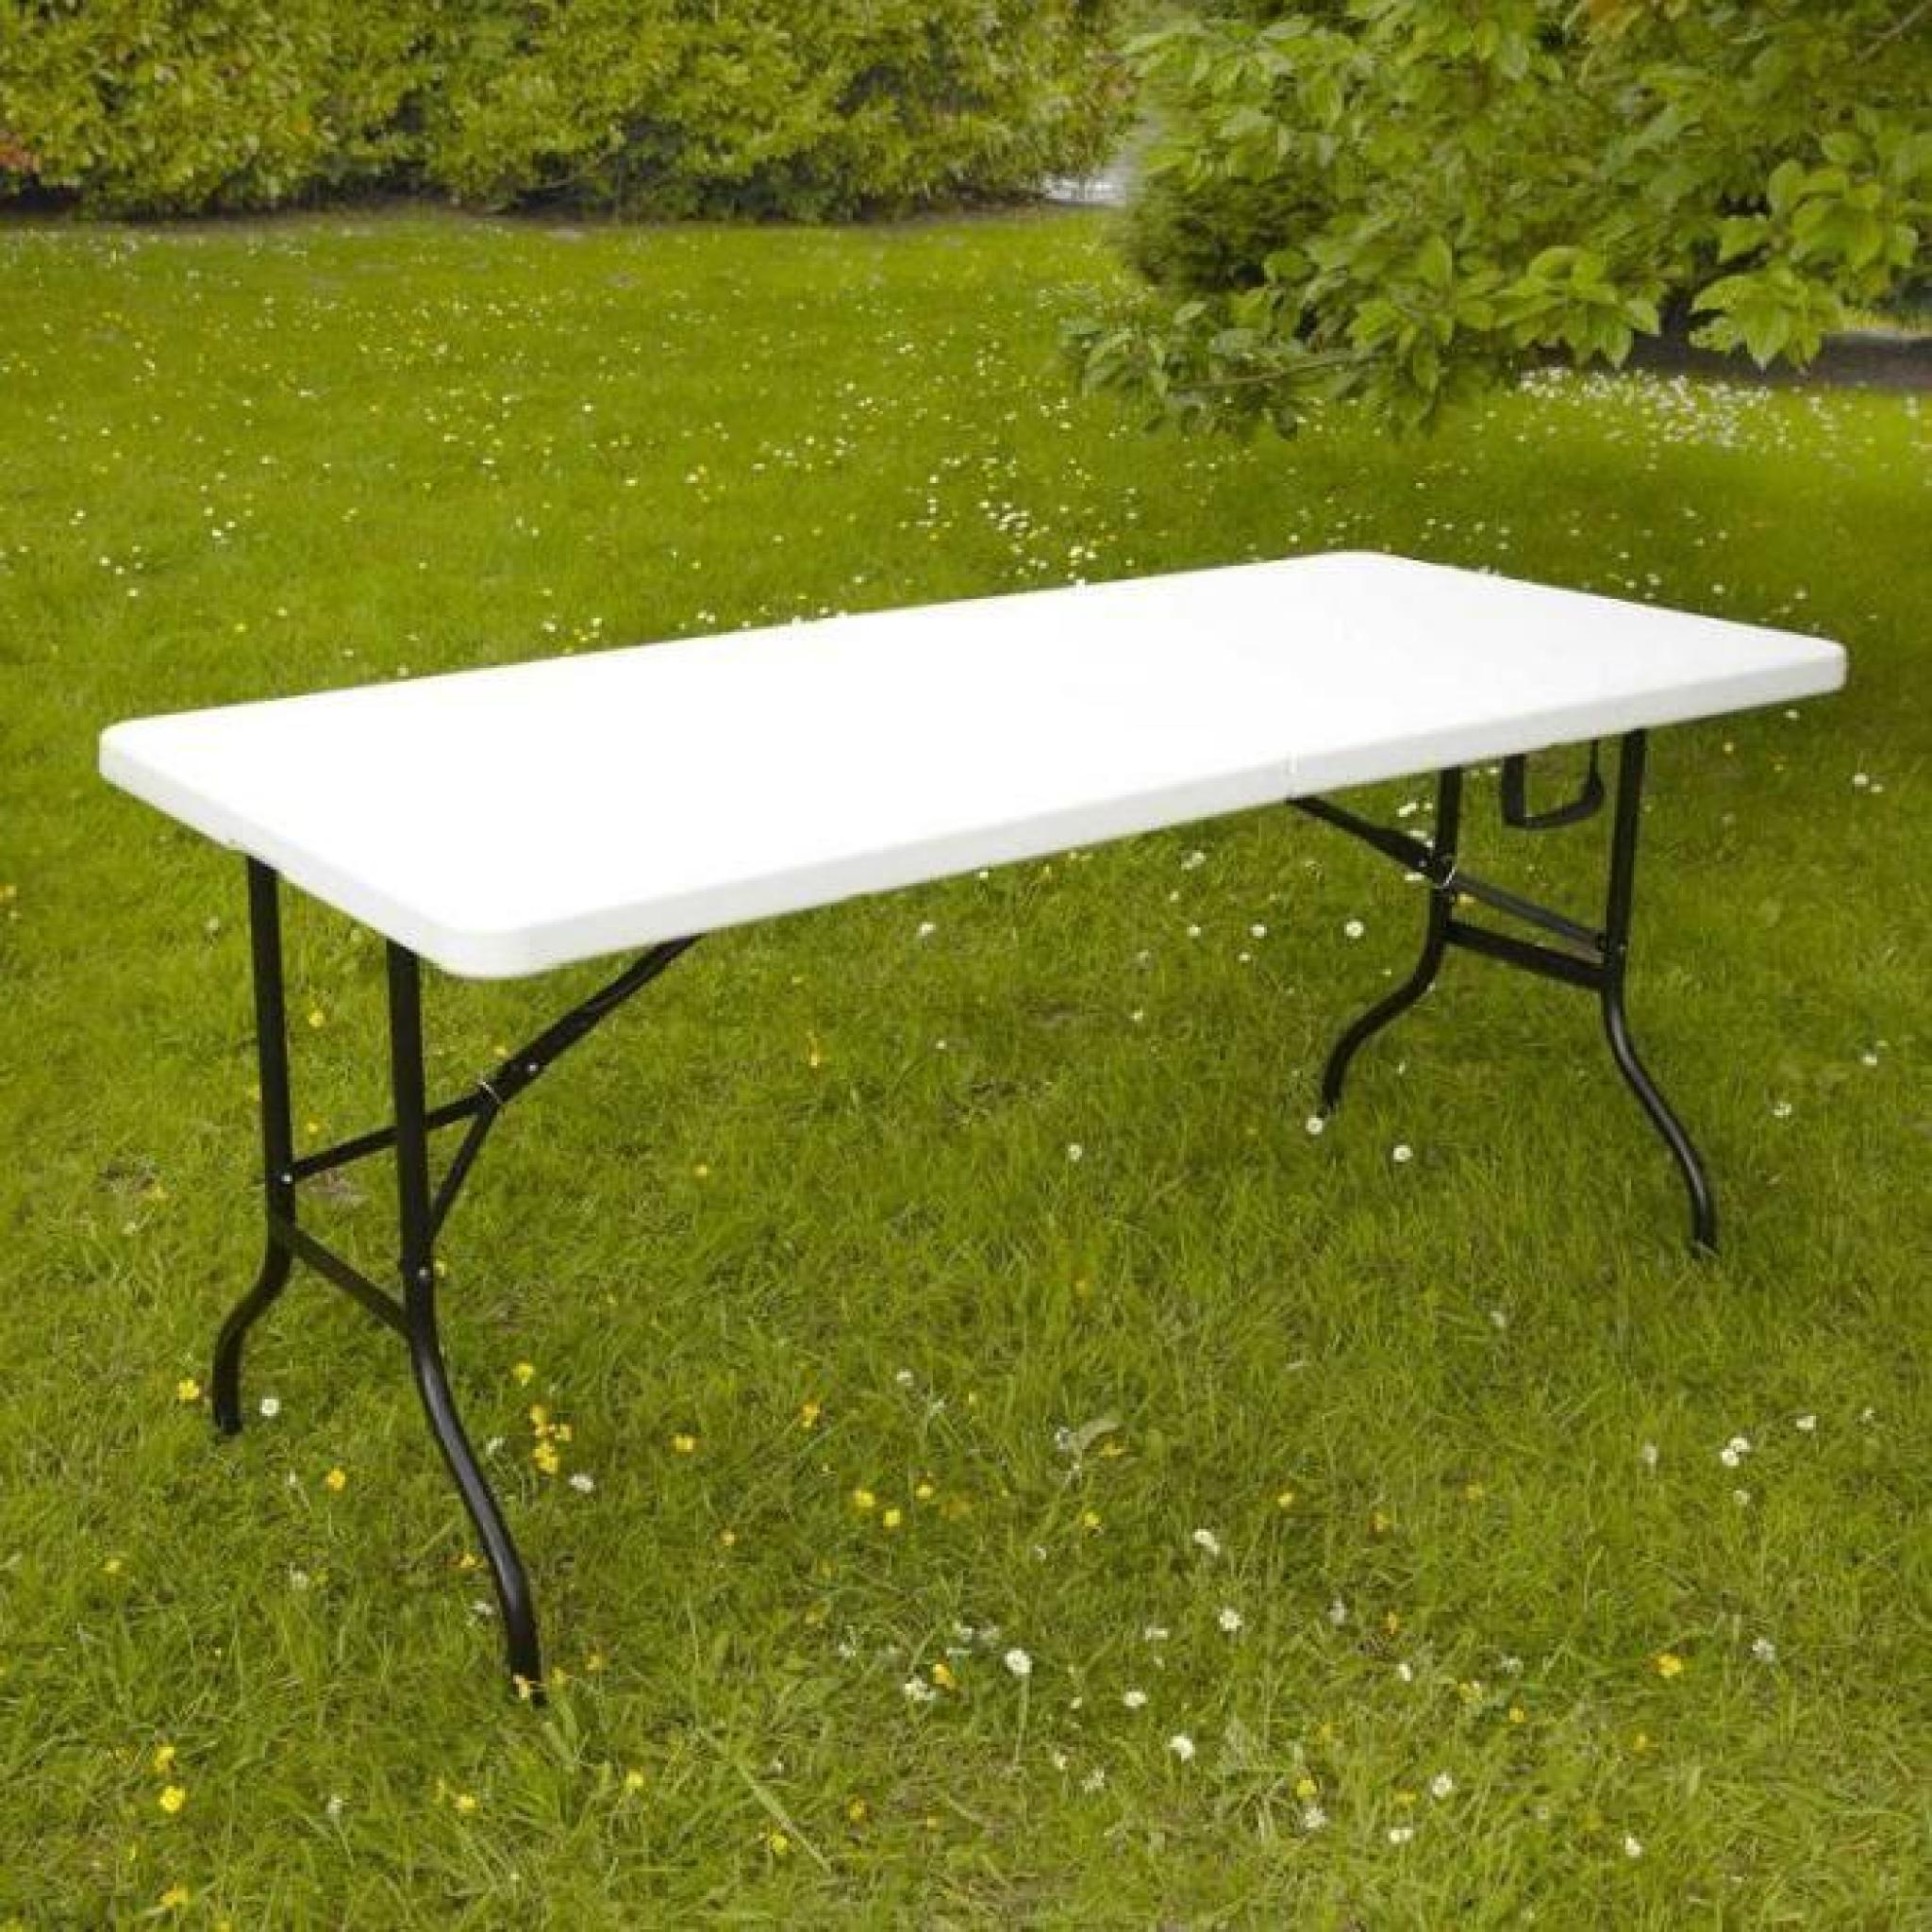 Table pliante traiteur 180 cm Lot de 10 pas cher